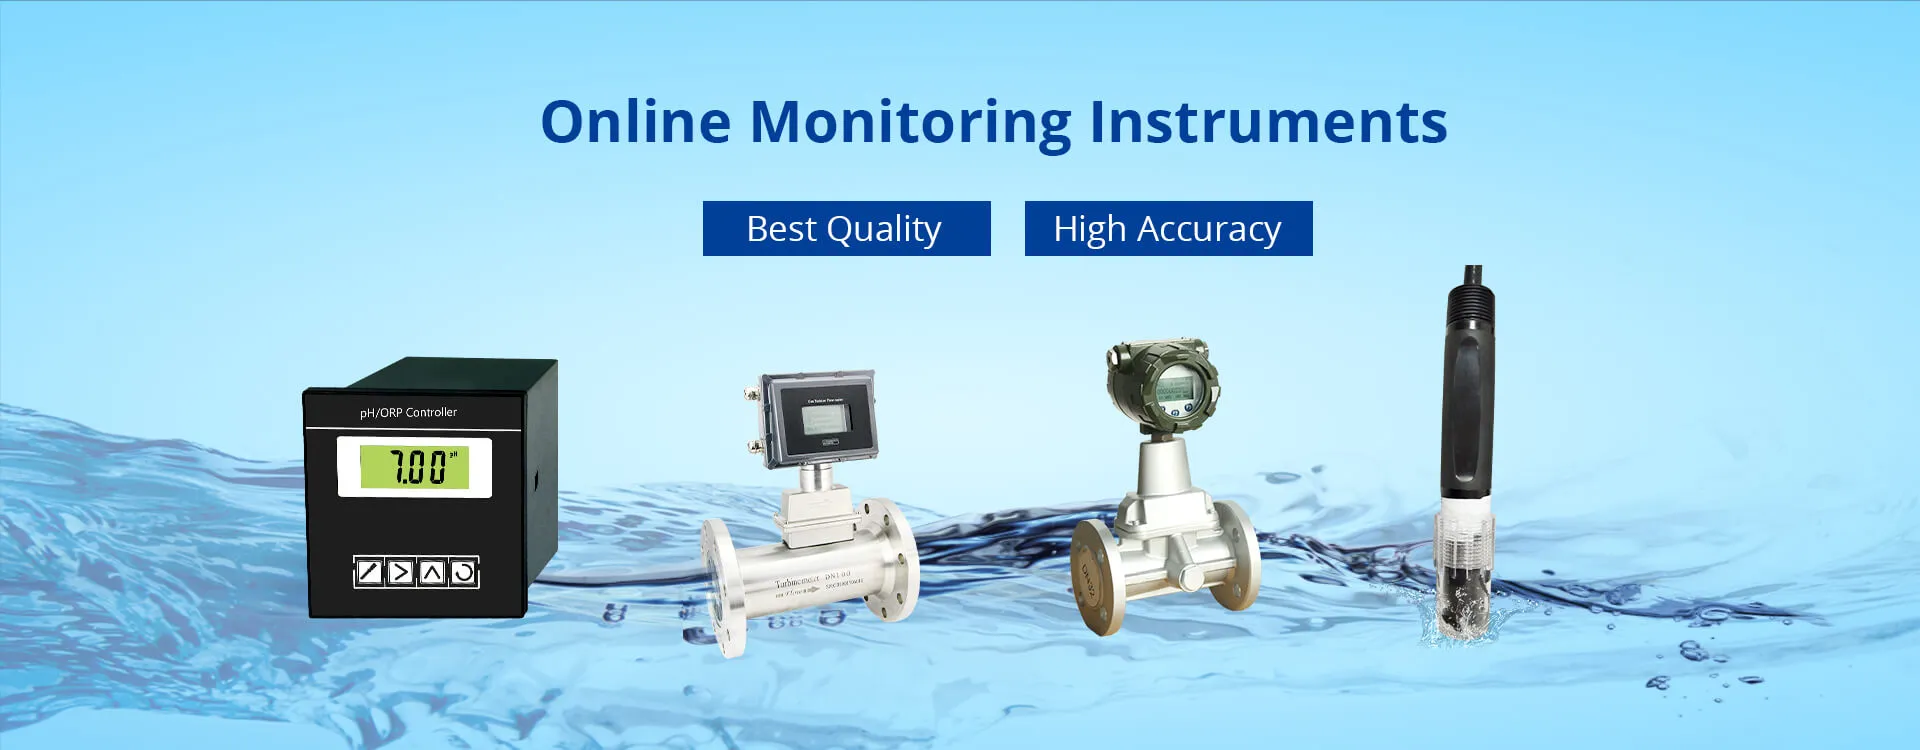 Инструменты для мониторинга воды онлайн